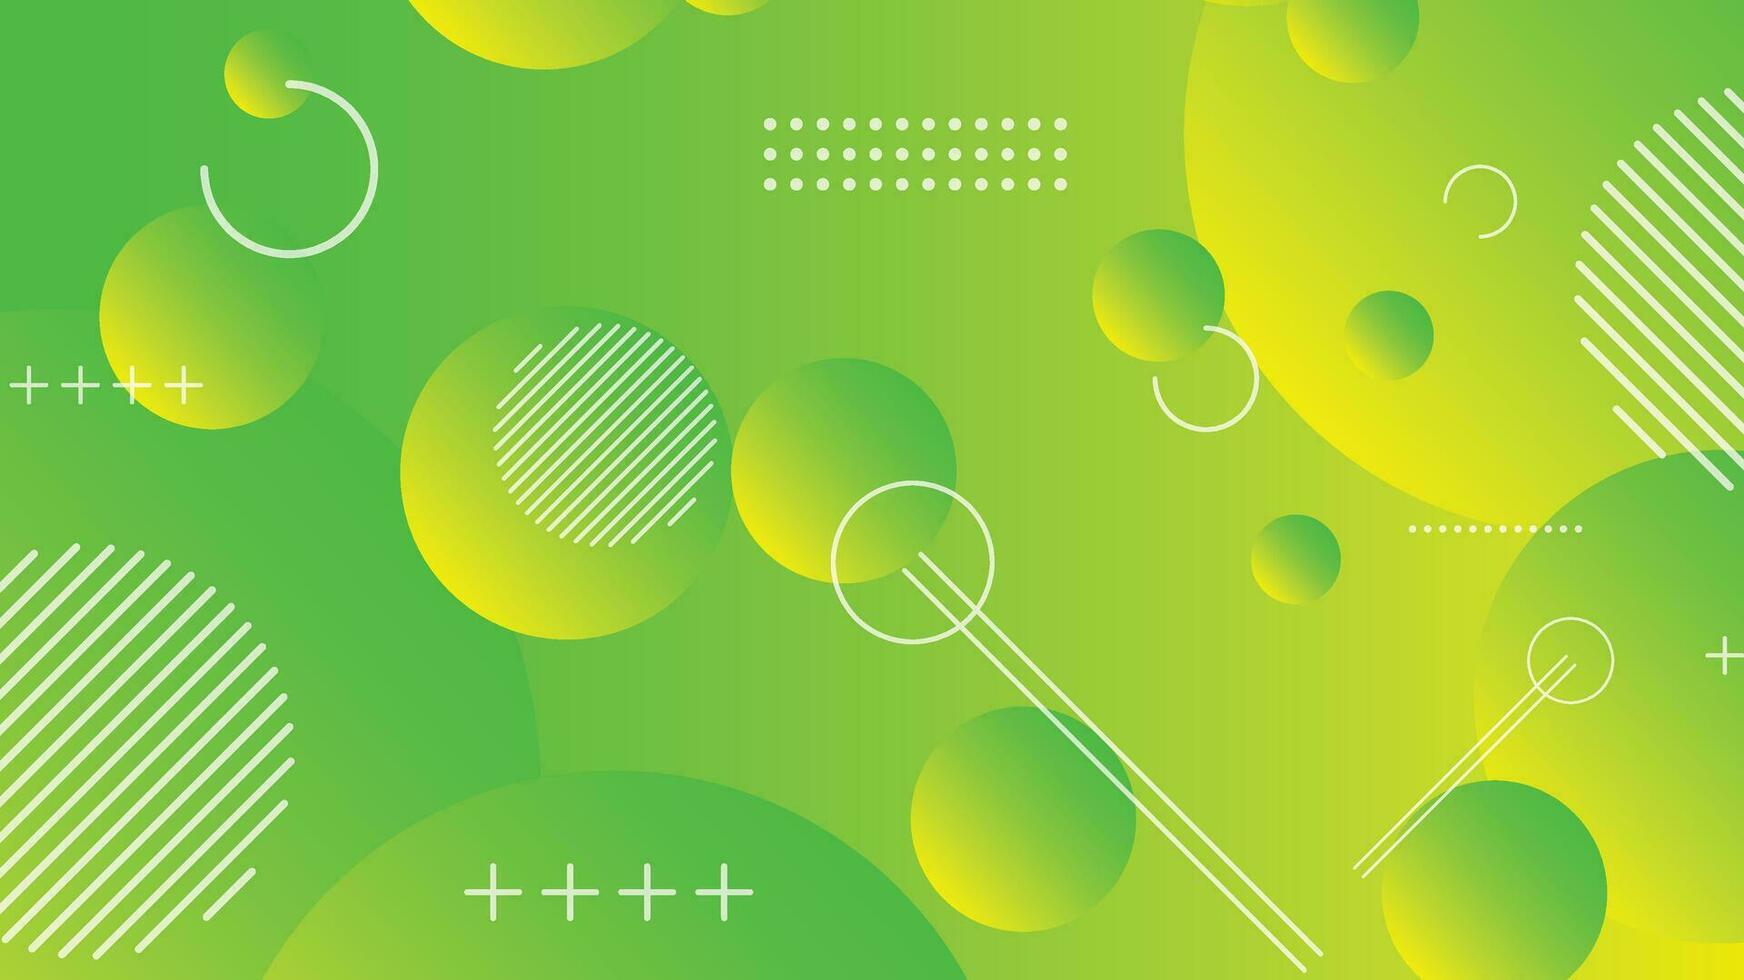 verde e giallo astratto cerchio pendenza moderno grafico sfondo vettore